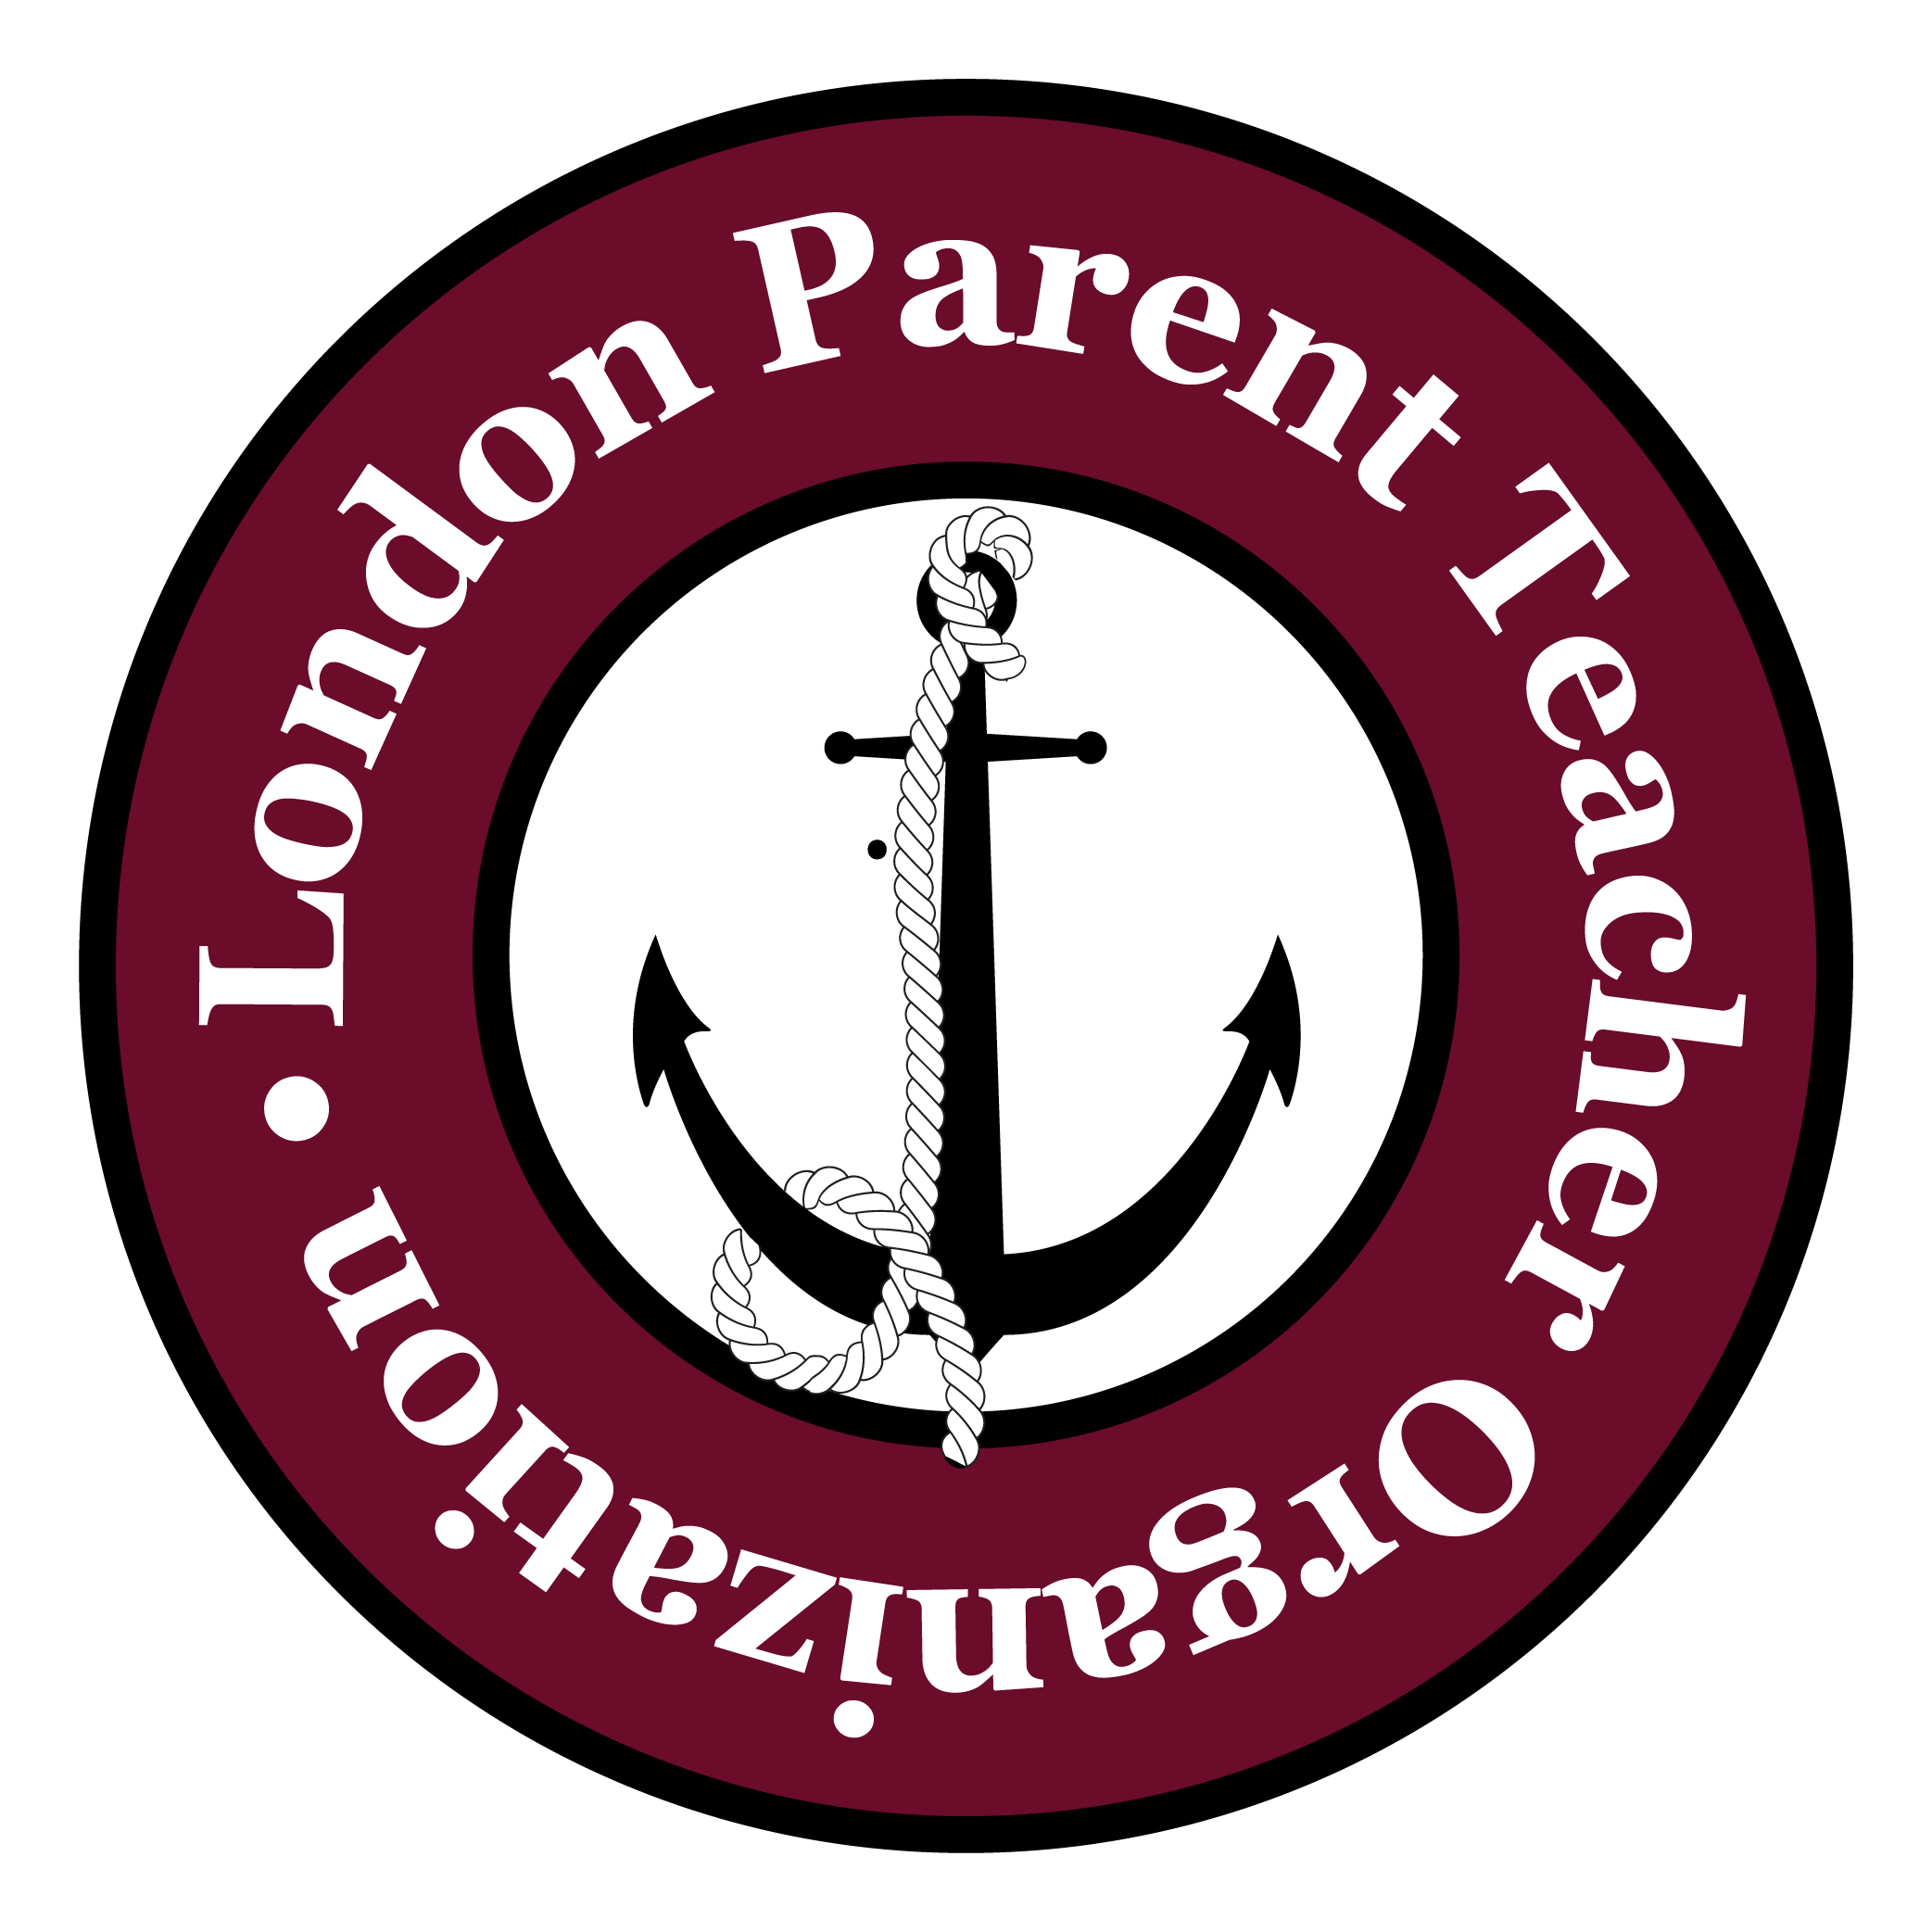 LPTO logo-22.png